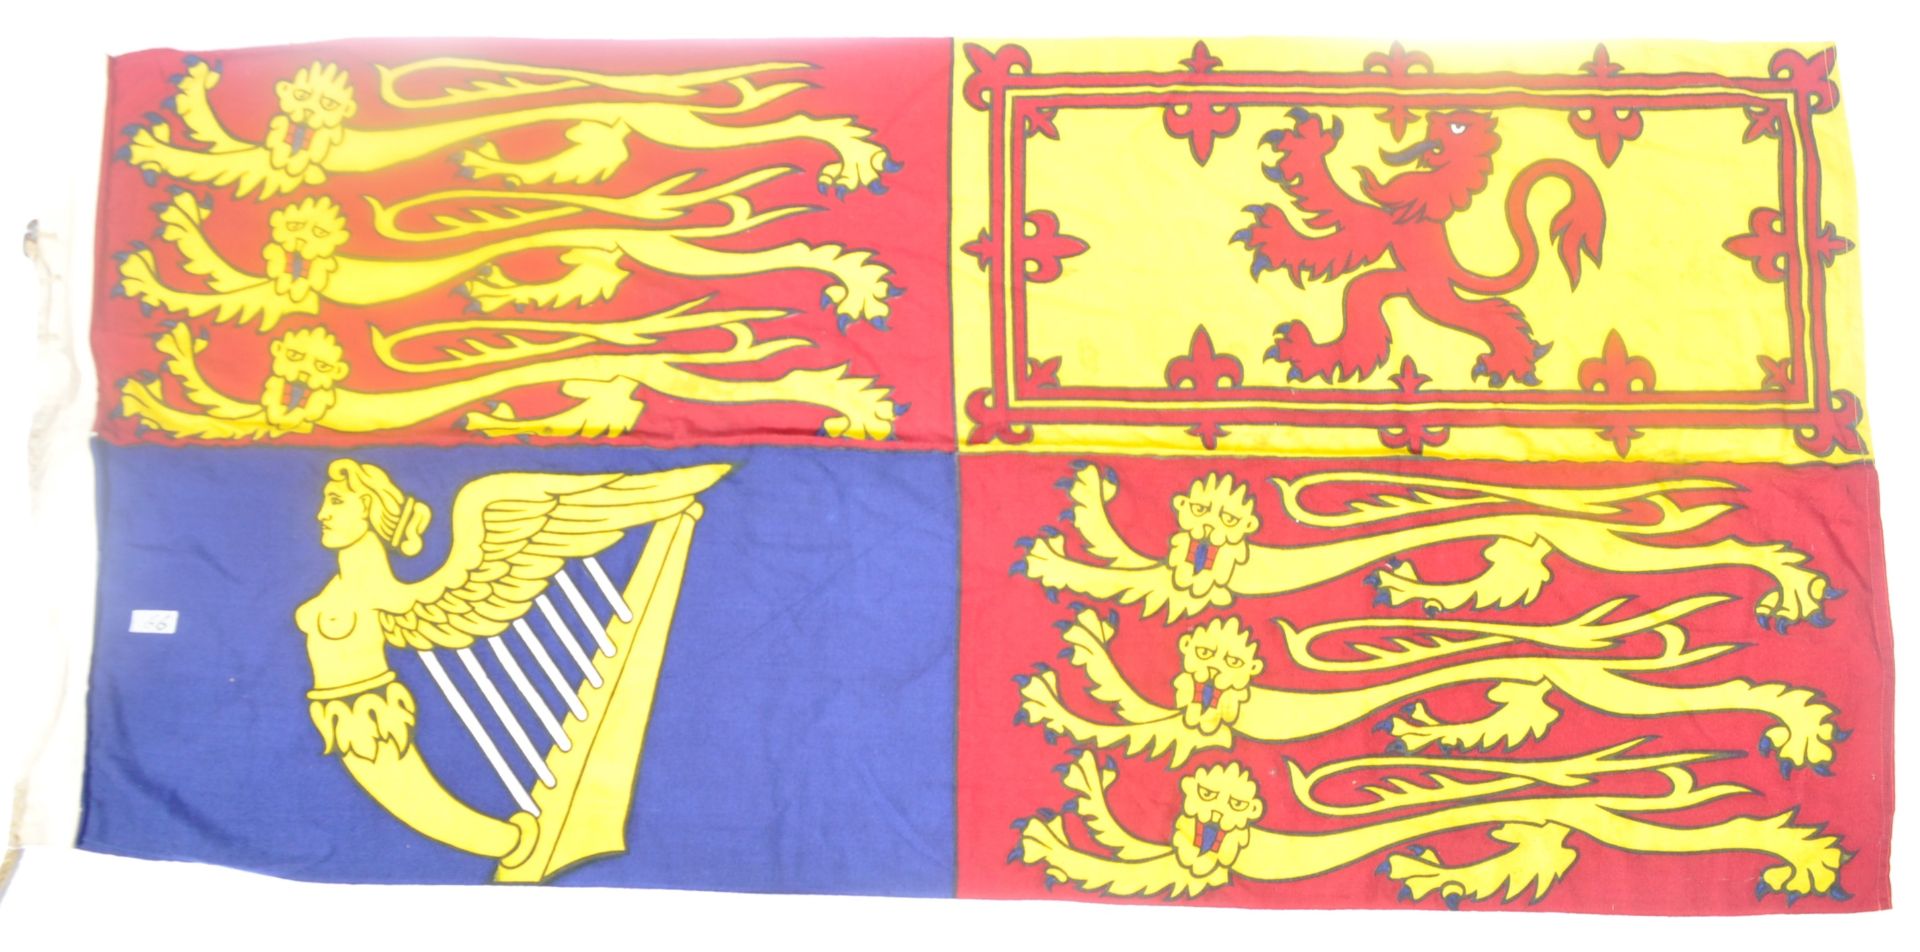 LARGE ORIGINAL VINTAGE BRITISH ROYAL STANDARD FLAG